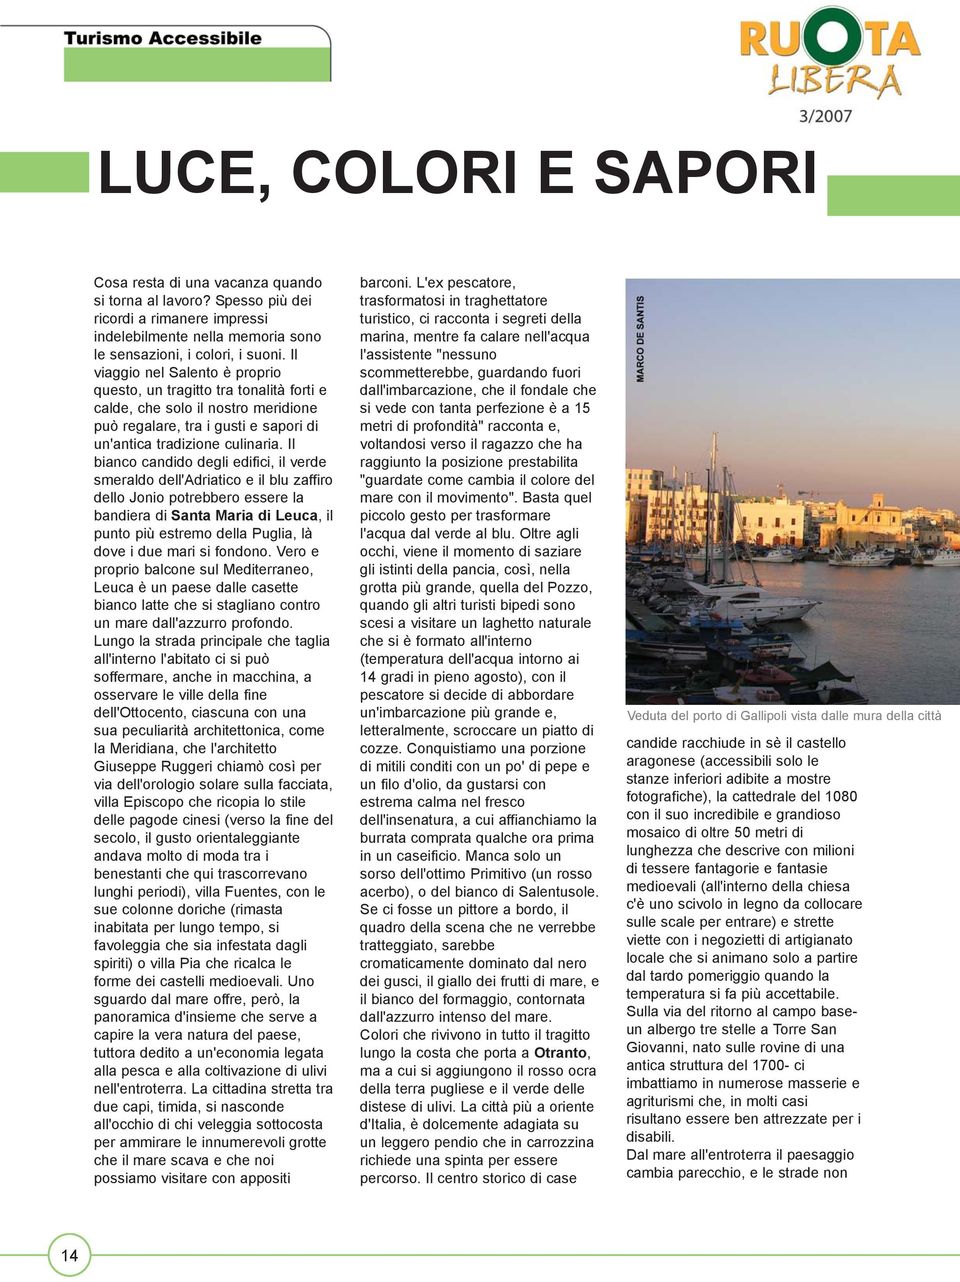 Il bianco candido degli edifici, il verde smeraldo dell'adriatico e il blu zaffiro dello Jonio potrebbero essere la bandiera di Santa Maria di Leuca, il punto più estremo della Puglia, là dove i due